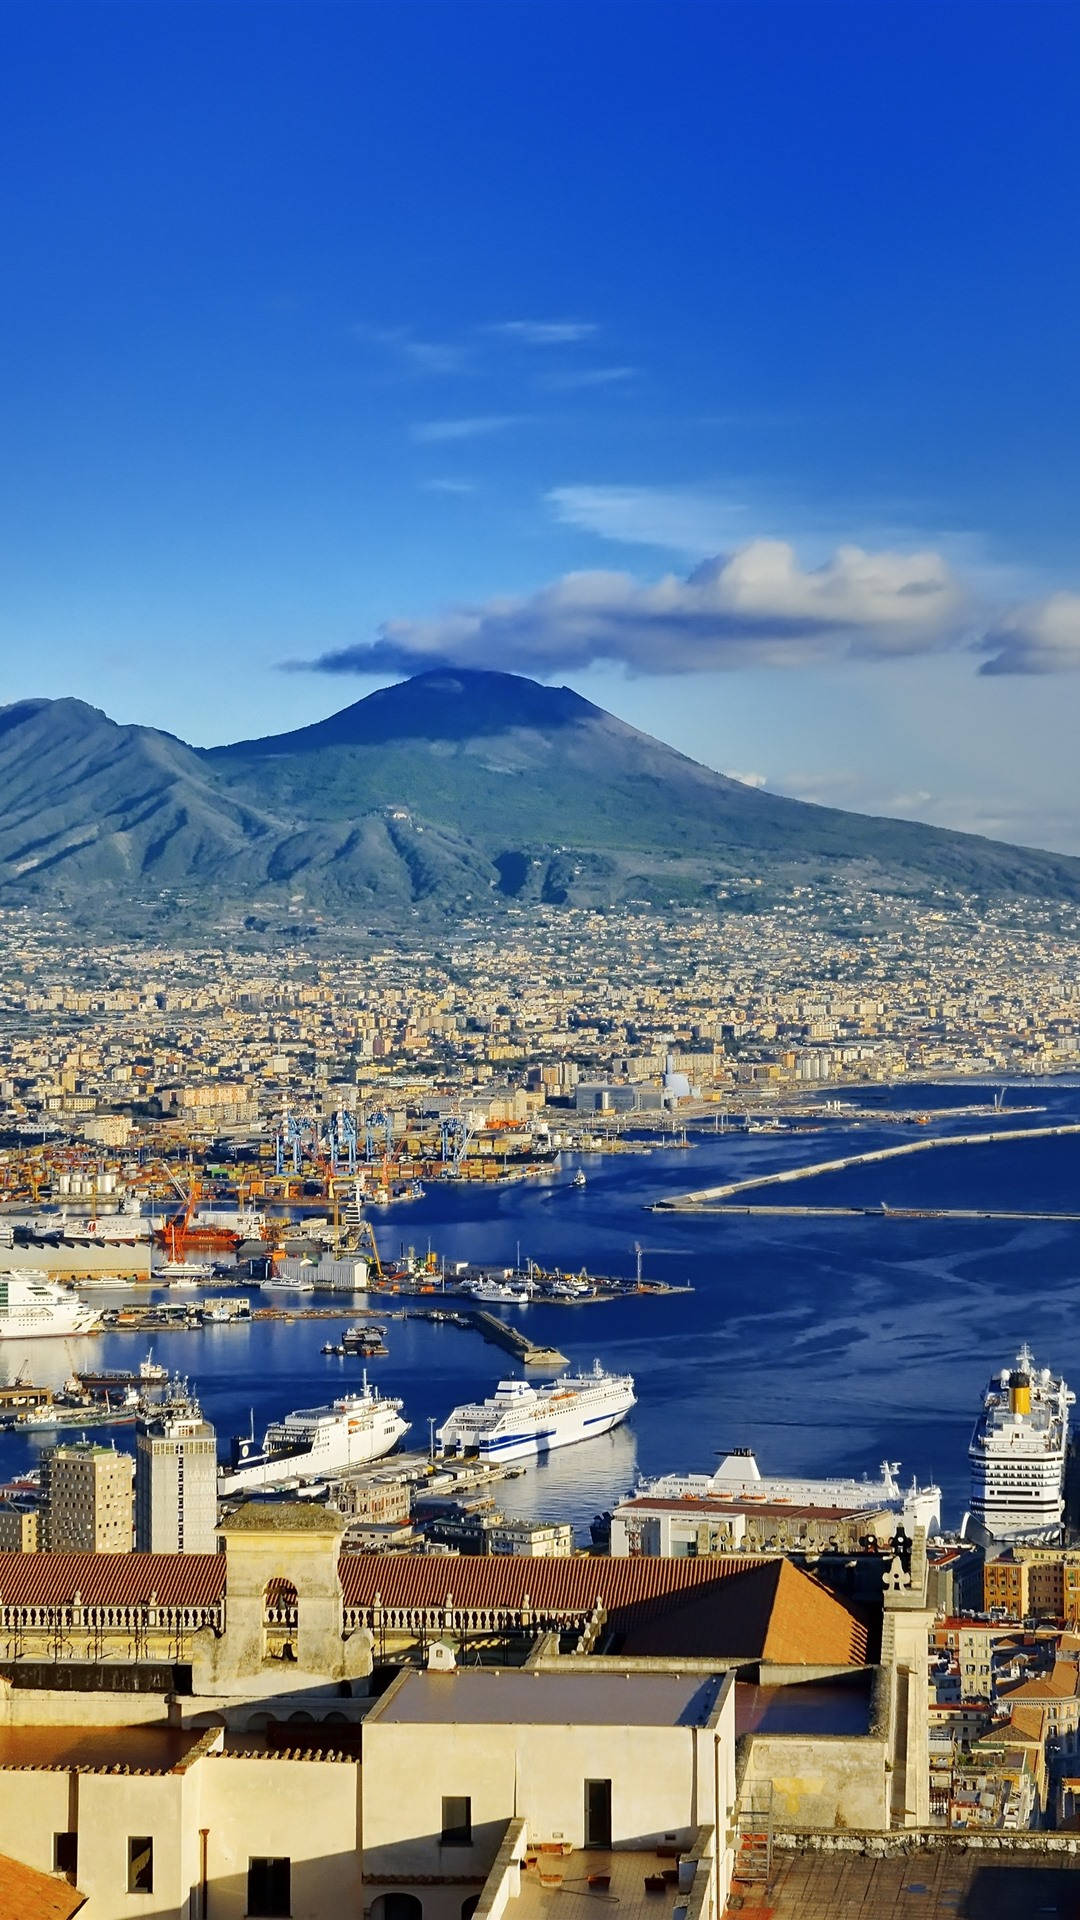 Naples Docked Cruise Ships